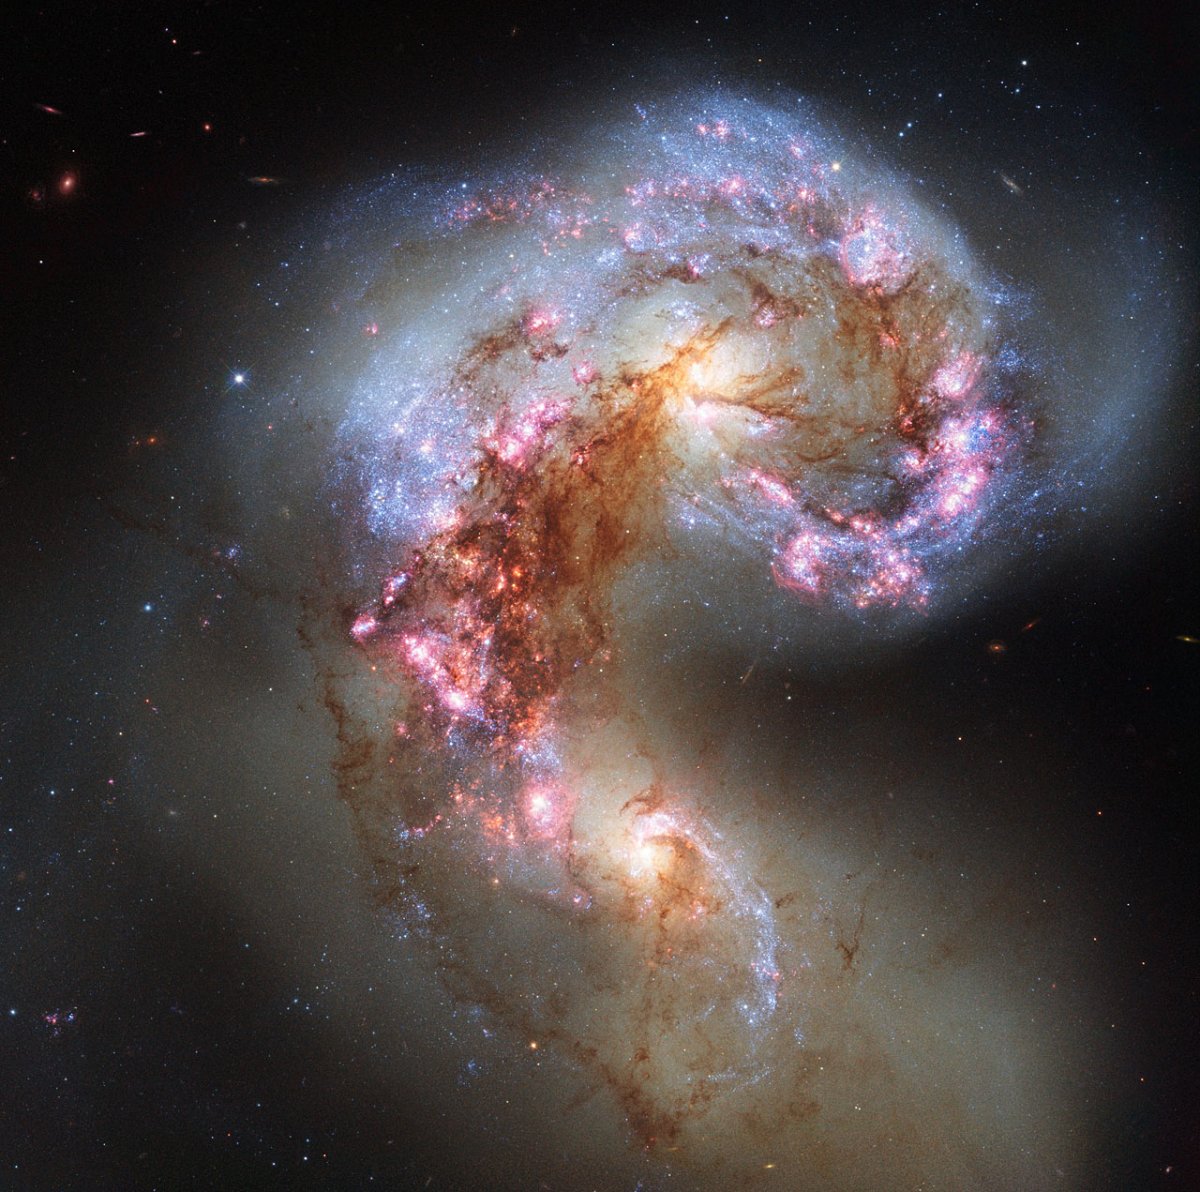 Астрономы обнаружили 6 новых галактик